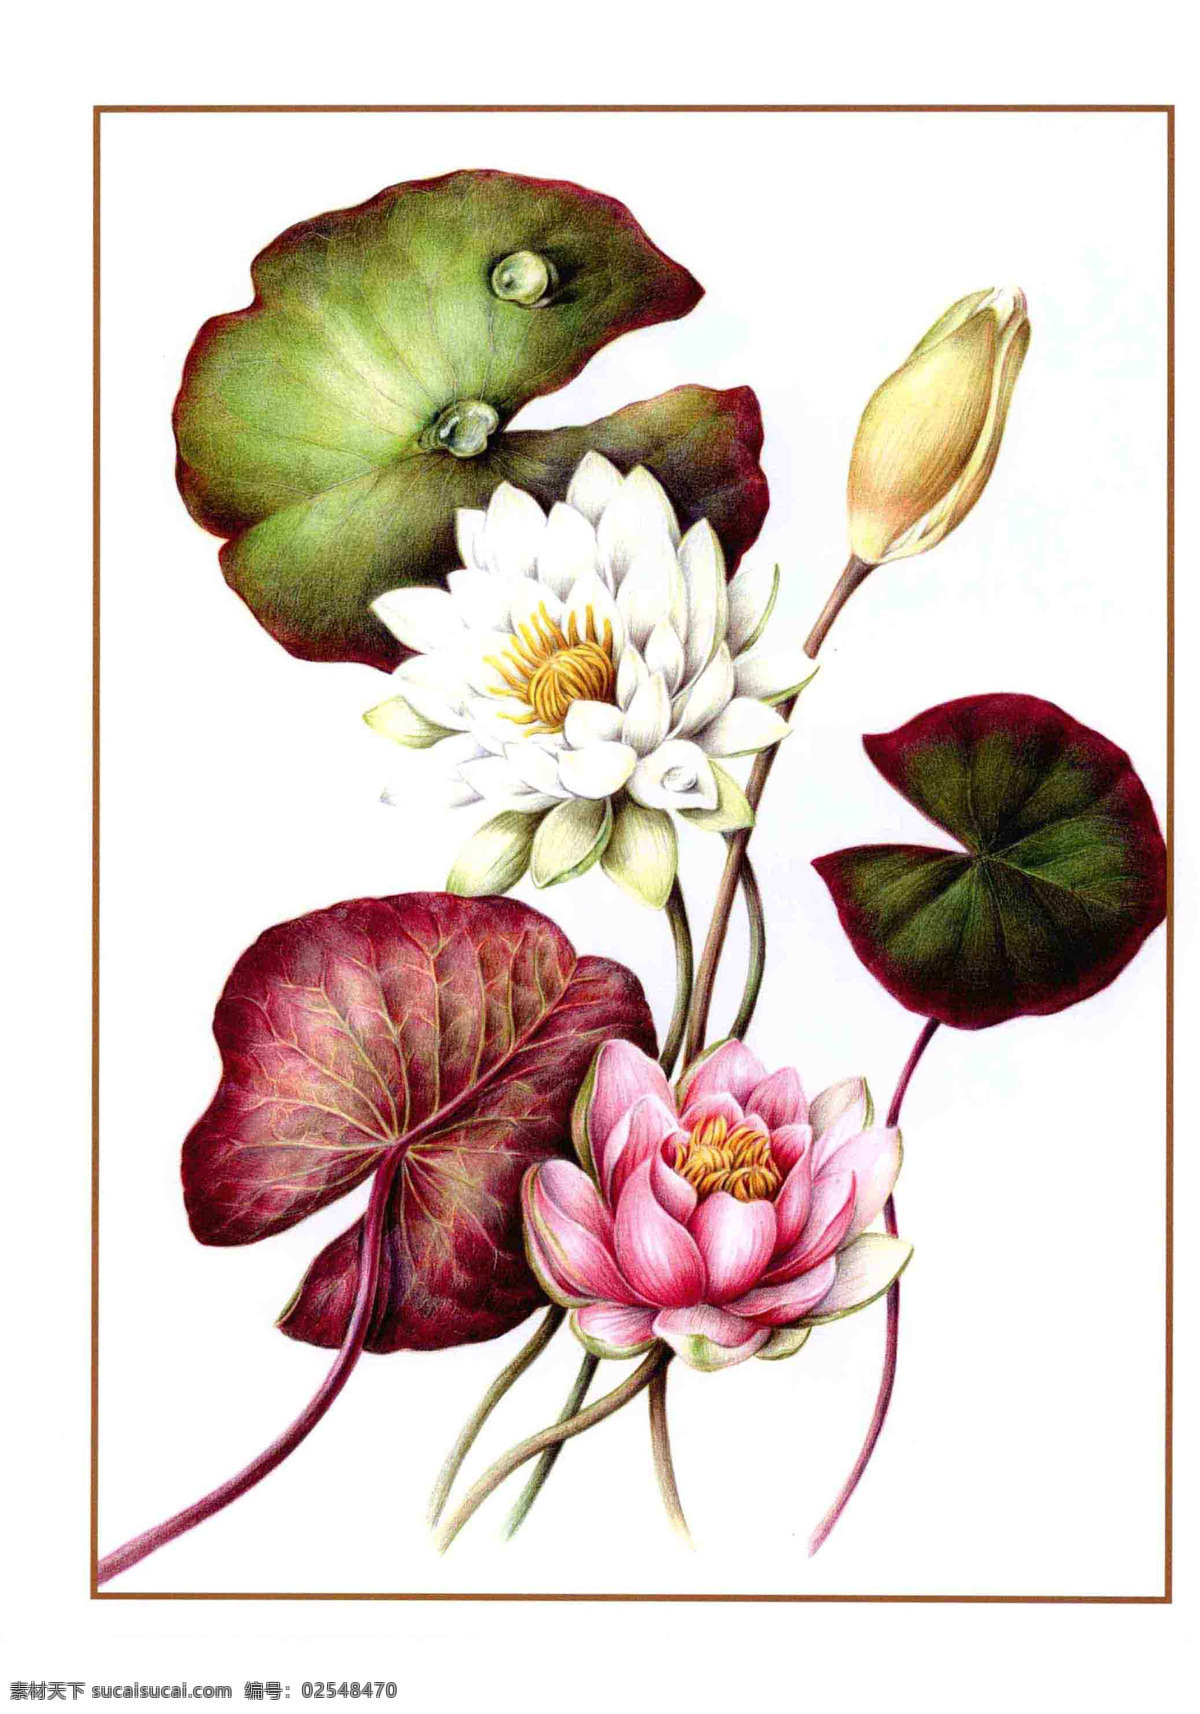 手绘荷花植物 彩铅 手绘 睡莲 荷花 花朵 植物 花卉 绘画 教学 印刷 宣传 网页 花 生物世界 花草